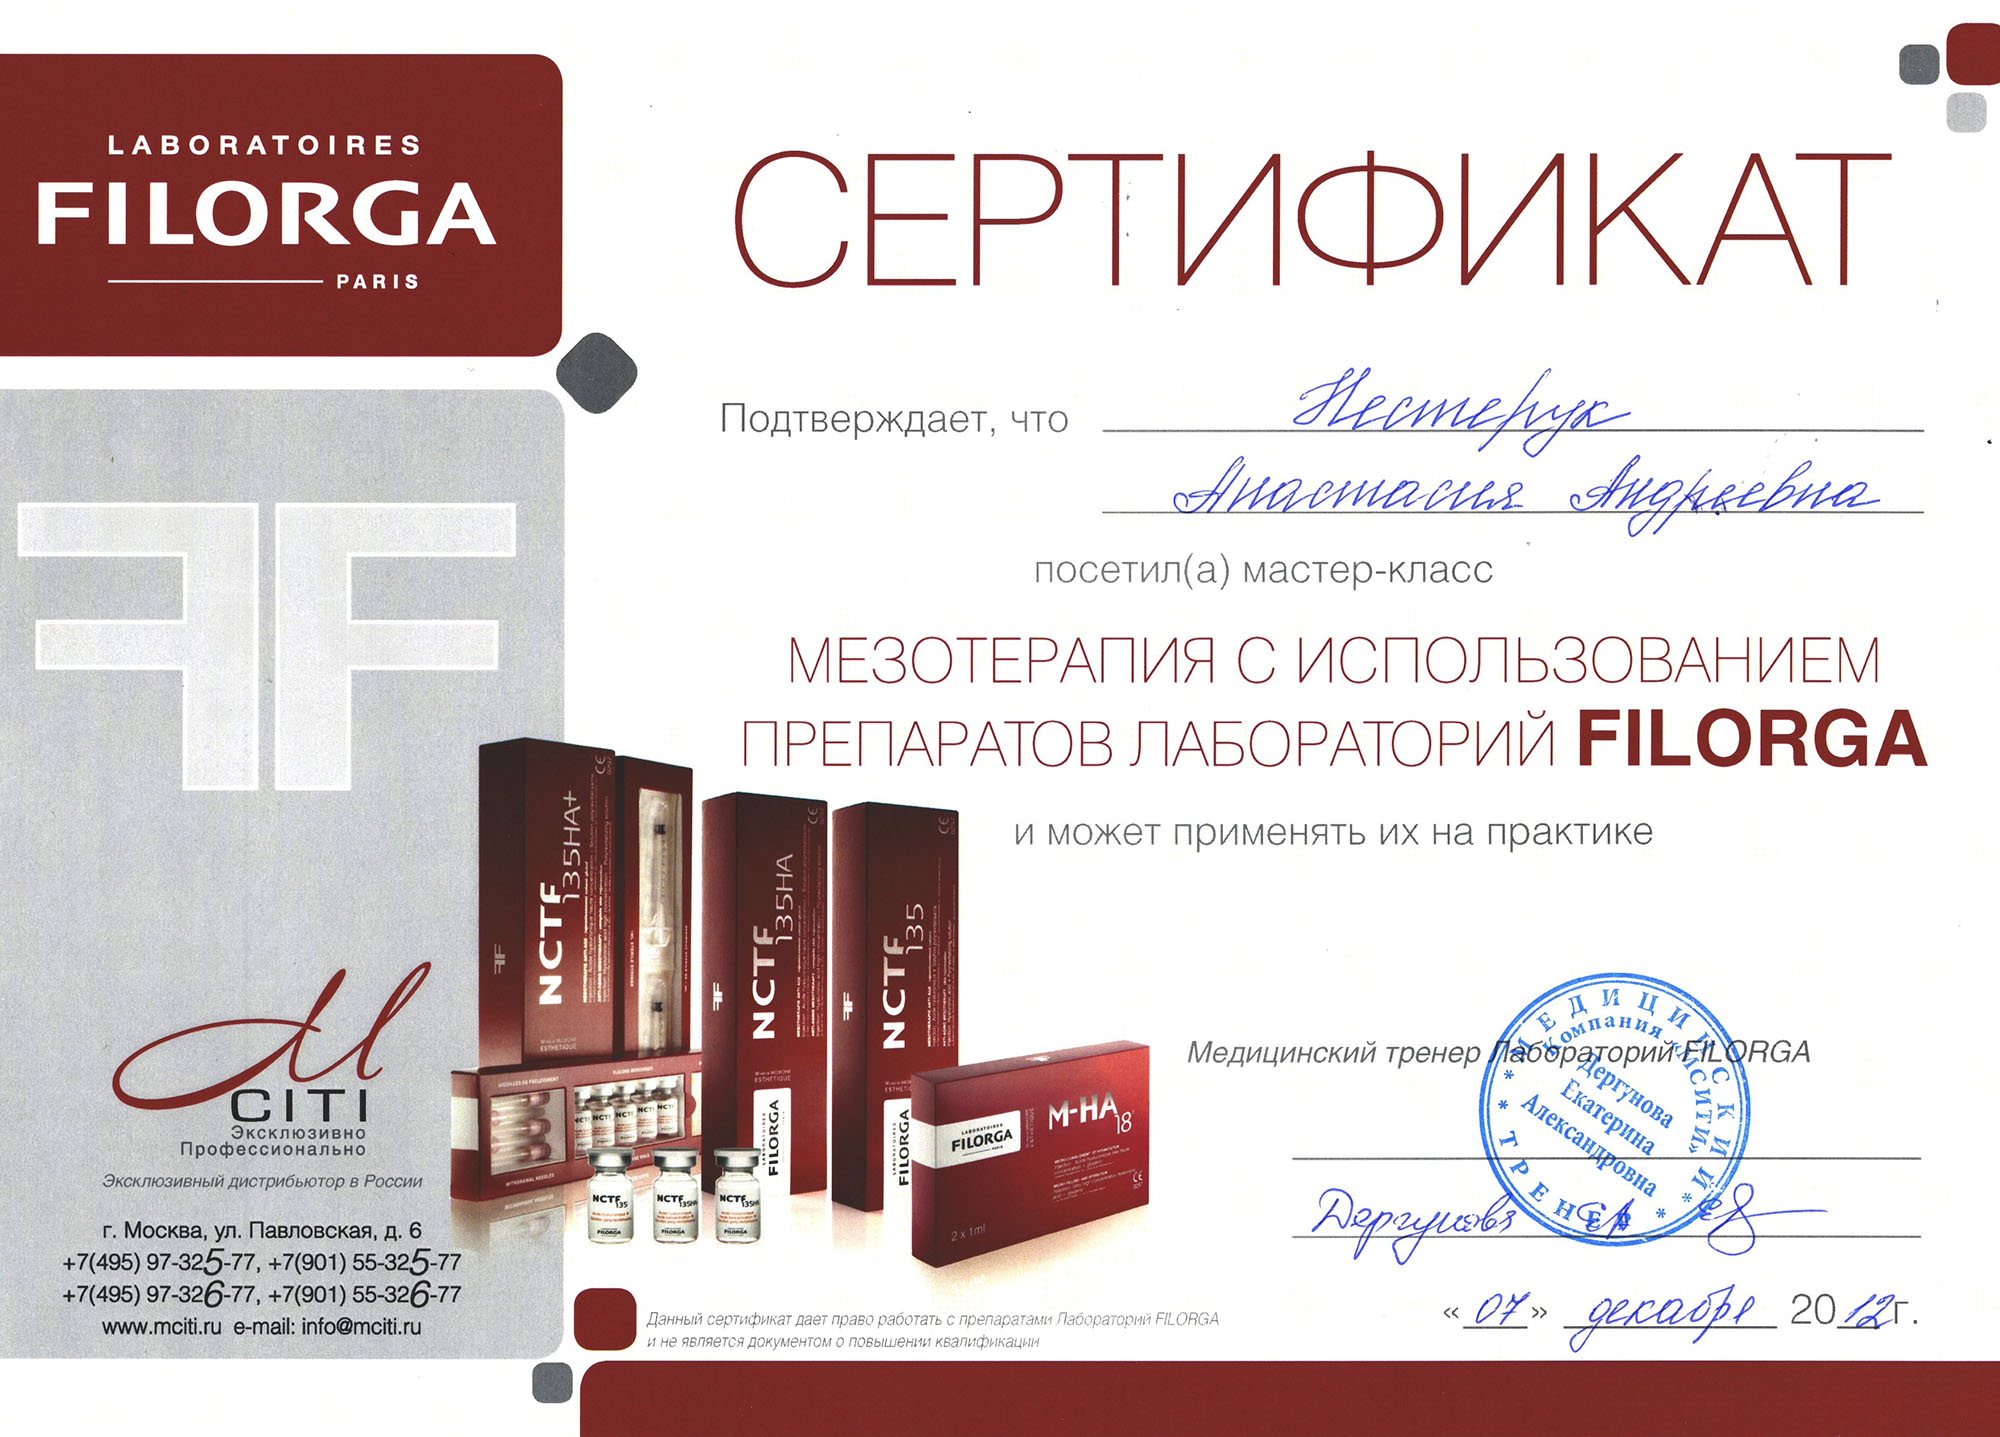 Сертификат — Мастер-класс «Мезотерапия с использованием препаратов лабораторий Filorga». Яблочко Анастасия Андреевна